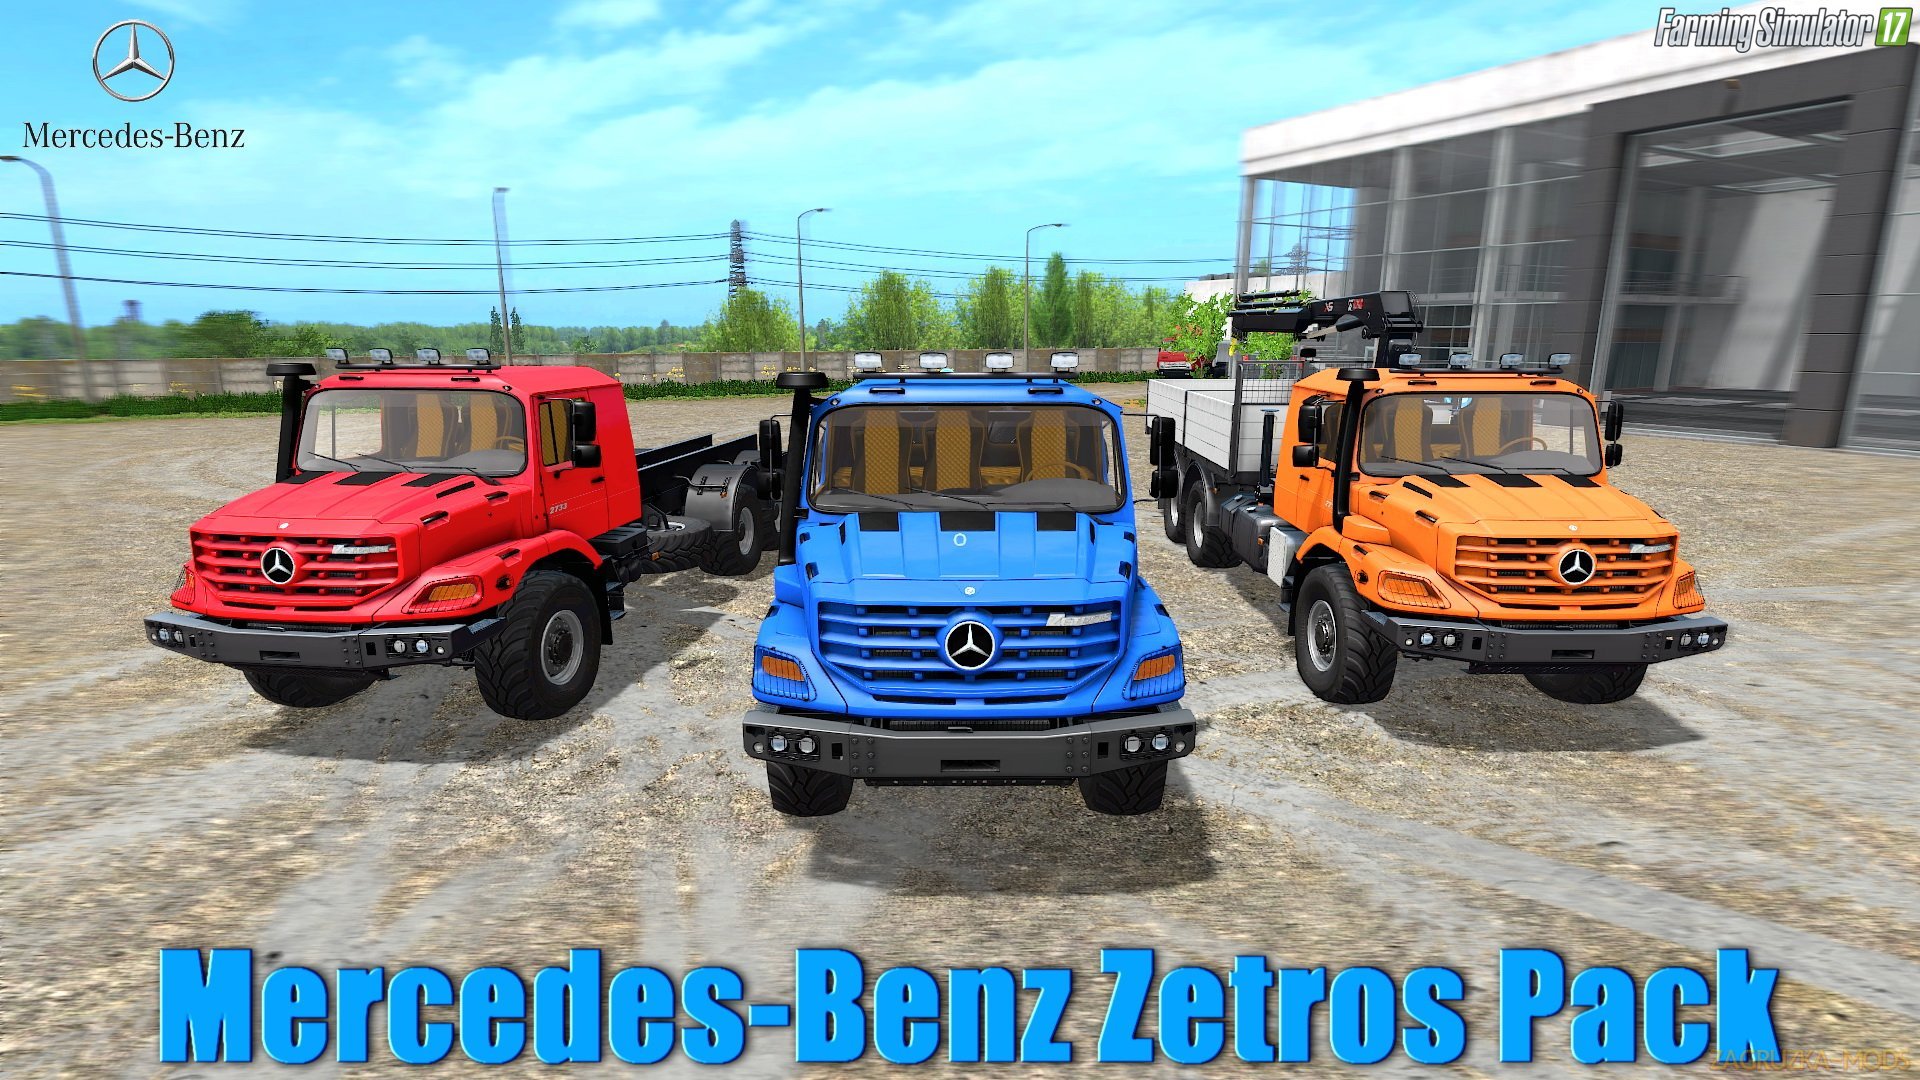 Mercedes-Benz Zetros Pack v1.0 for FS 17